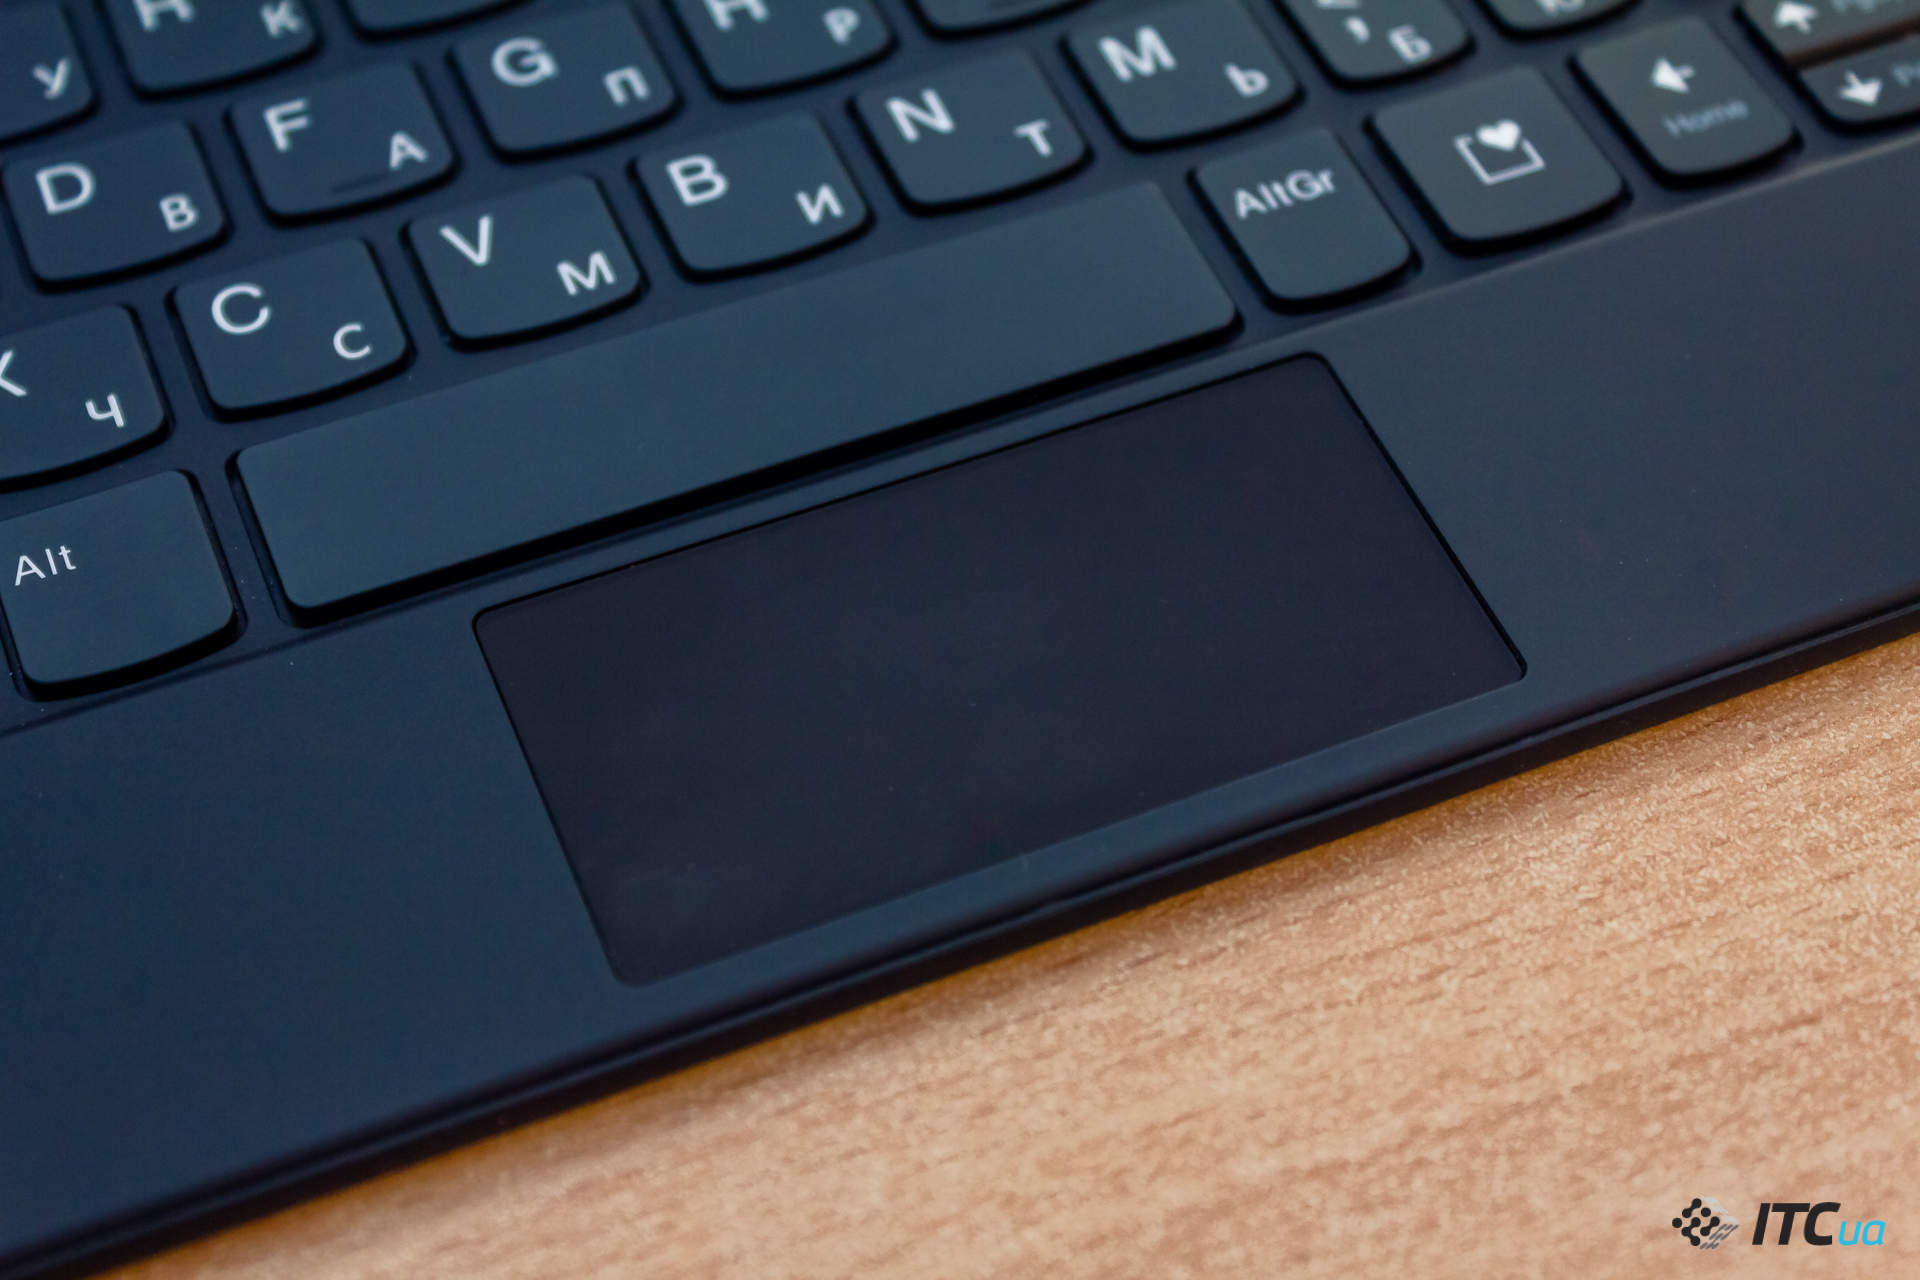 Lenovo ThinkPad X1 Fold: первый ноутбук со сгибаемым экраном